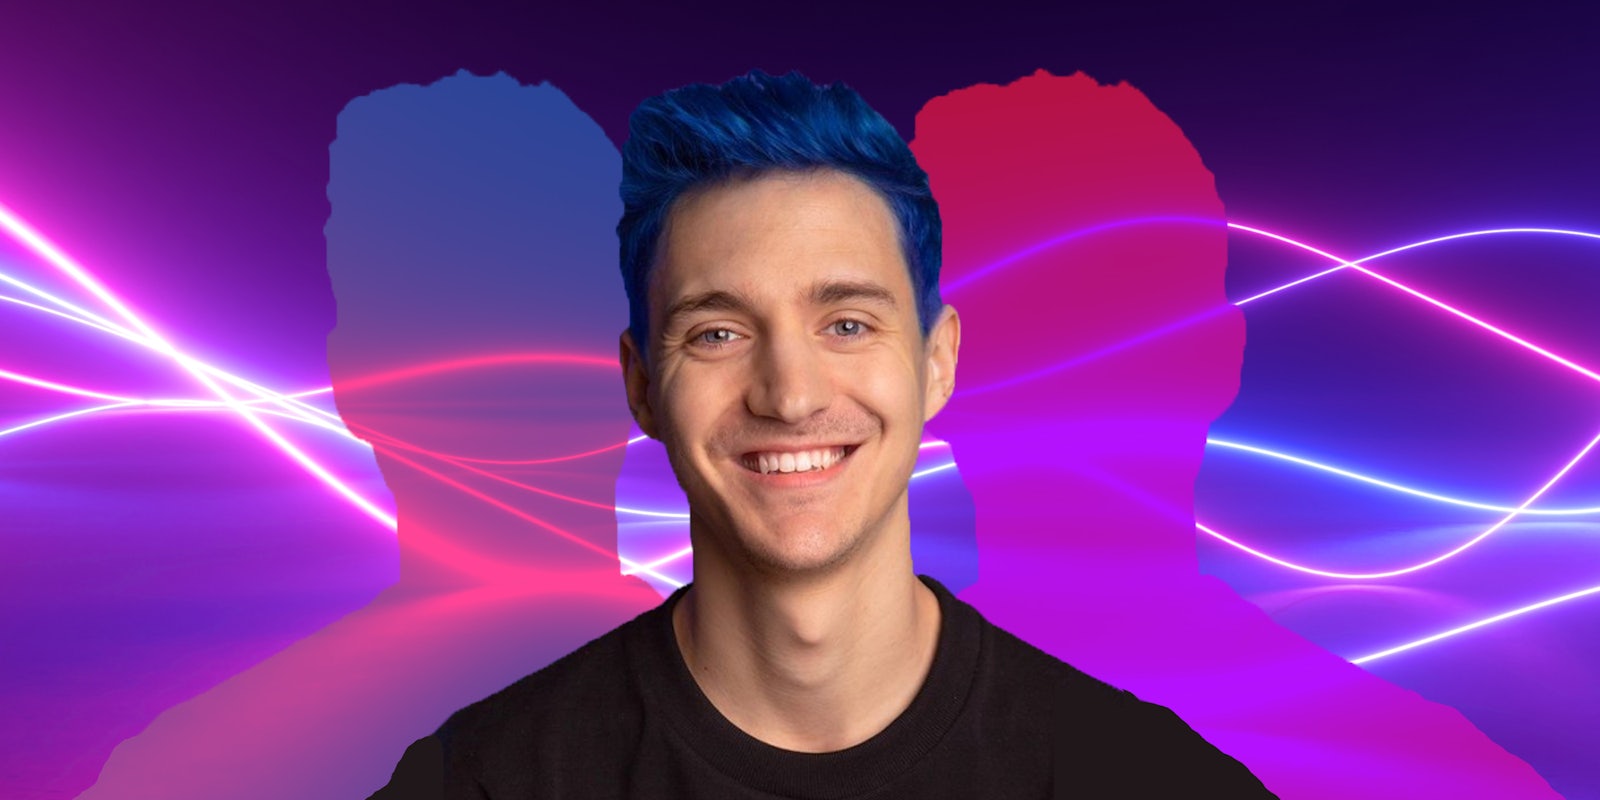 Tyler Blevins (Ninja) on blue background passionfruit design